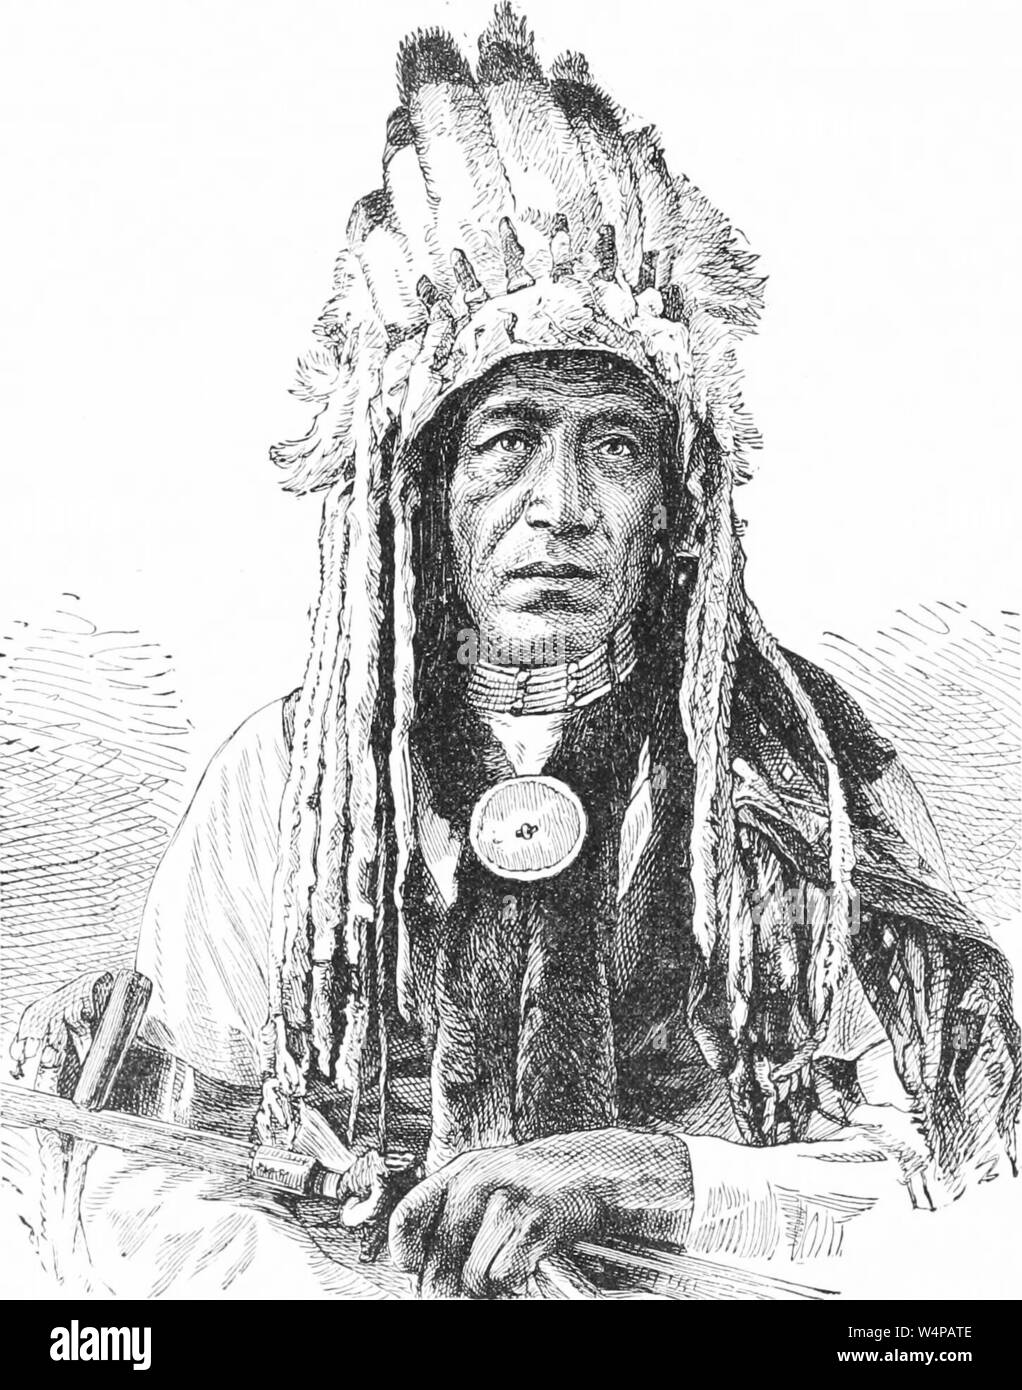 Dessin gravé des indiens Crow, Chef du livre 'Ridpath's histoire universelle de l' de John Clark Ridpath, 1897. Avec la permission de Internet Archive. () Banque D'Images